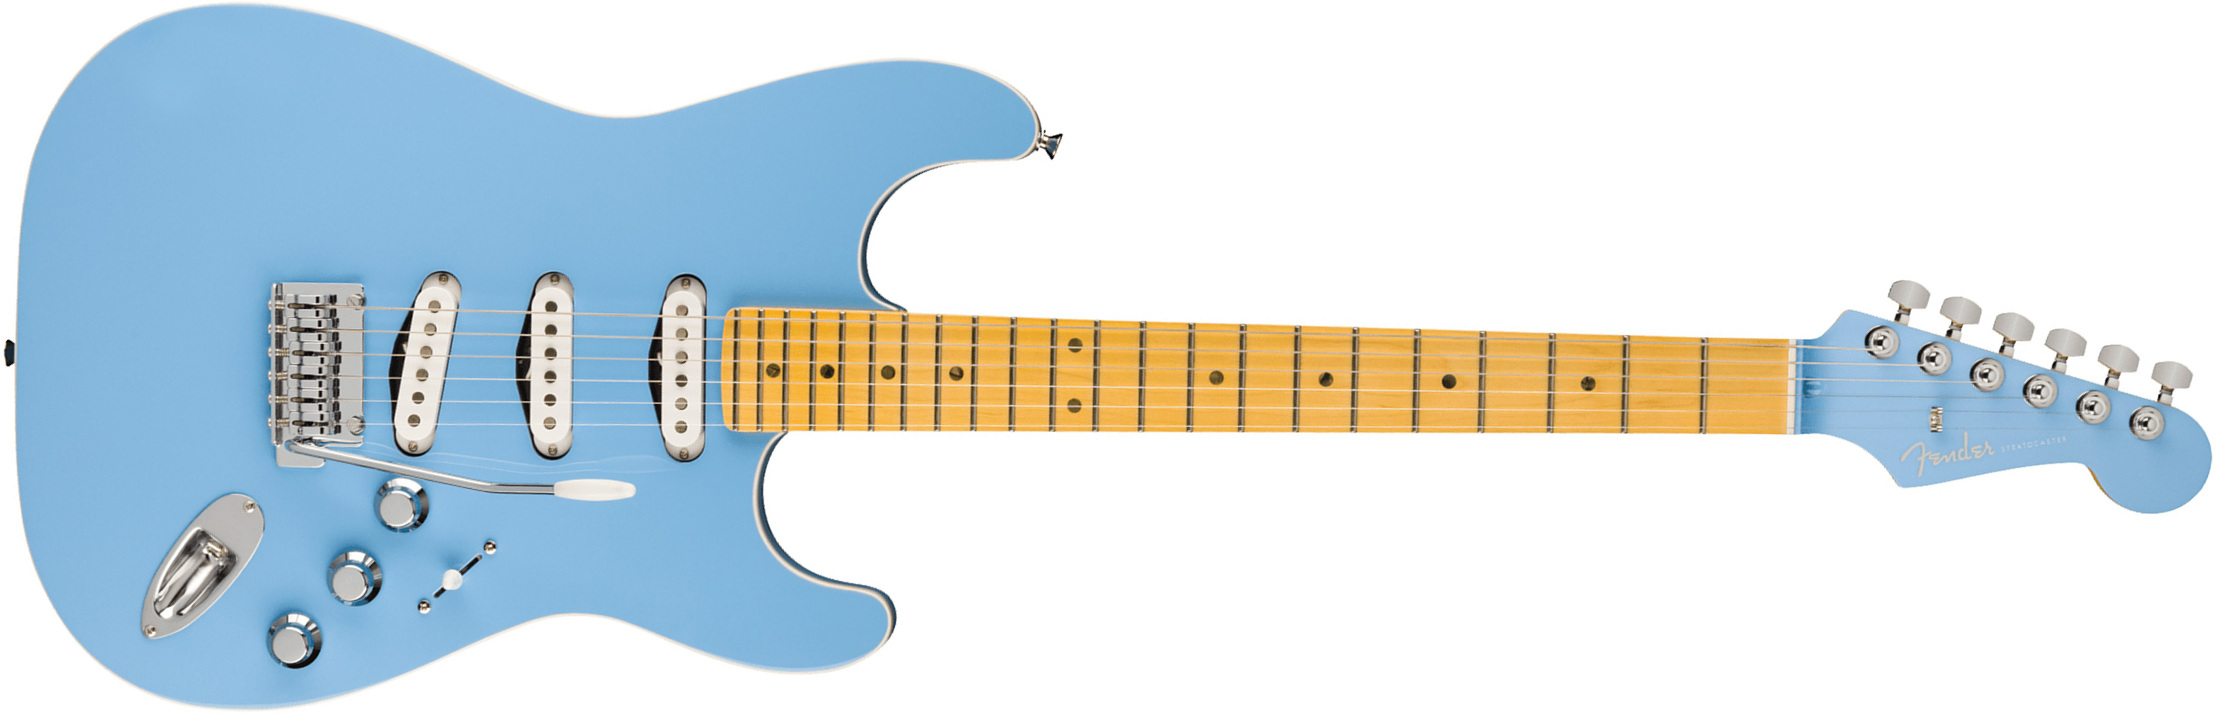 Fender Strat Aerodyne Special Jap 3s Trem Mn - California Blue - Guitare Électrique Forme Str - Main picture